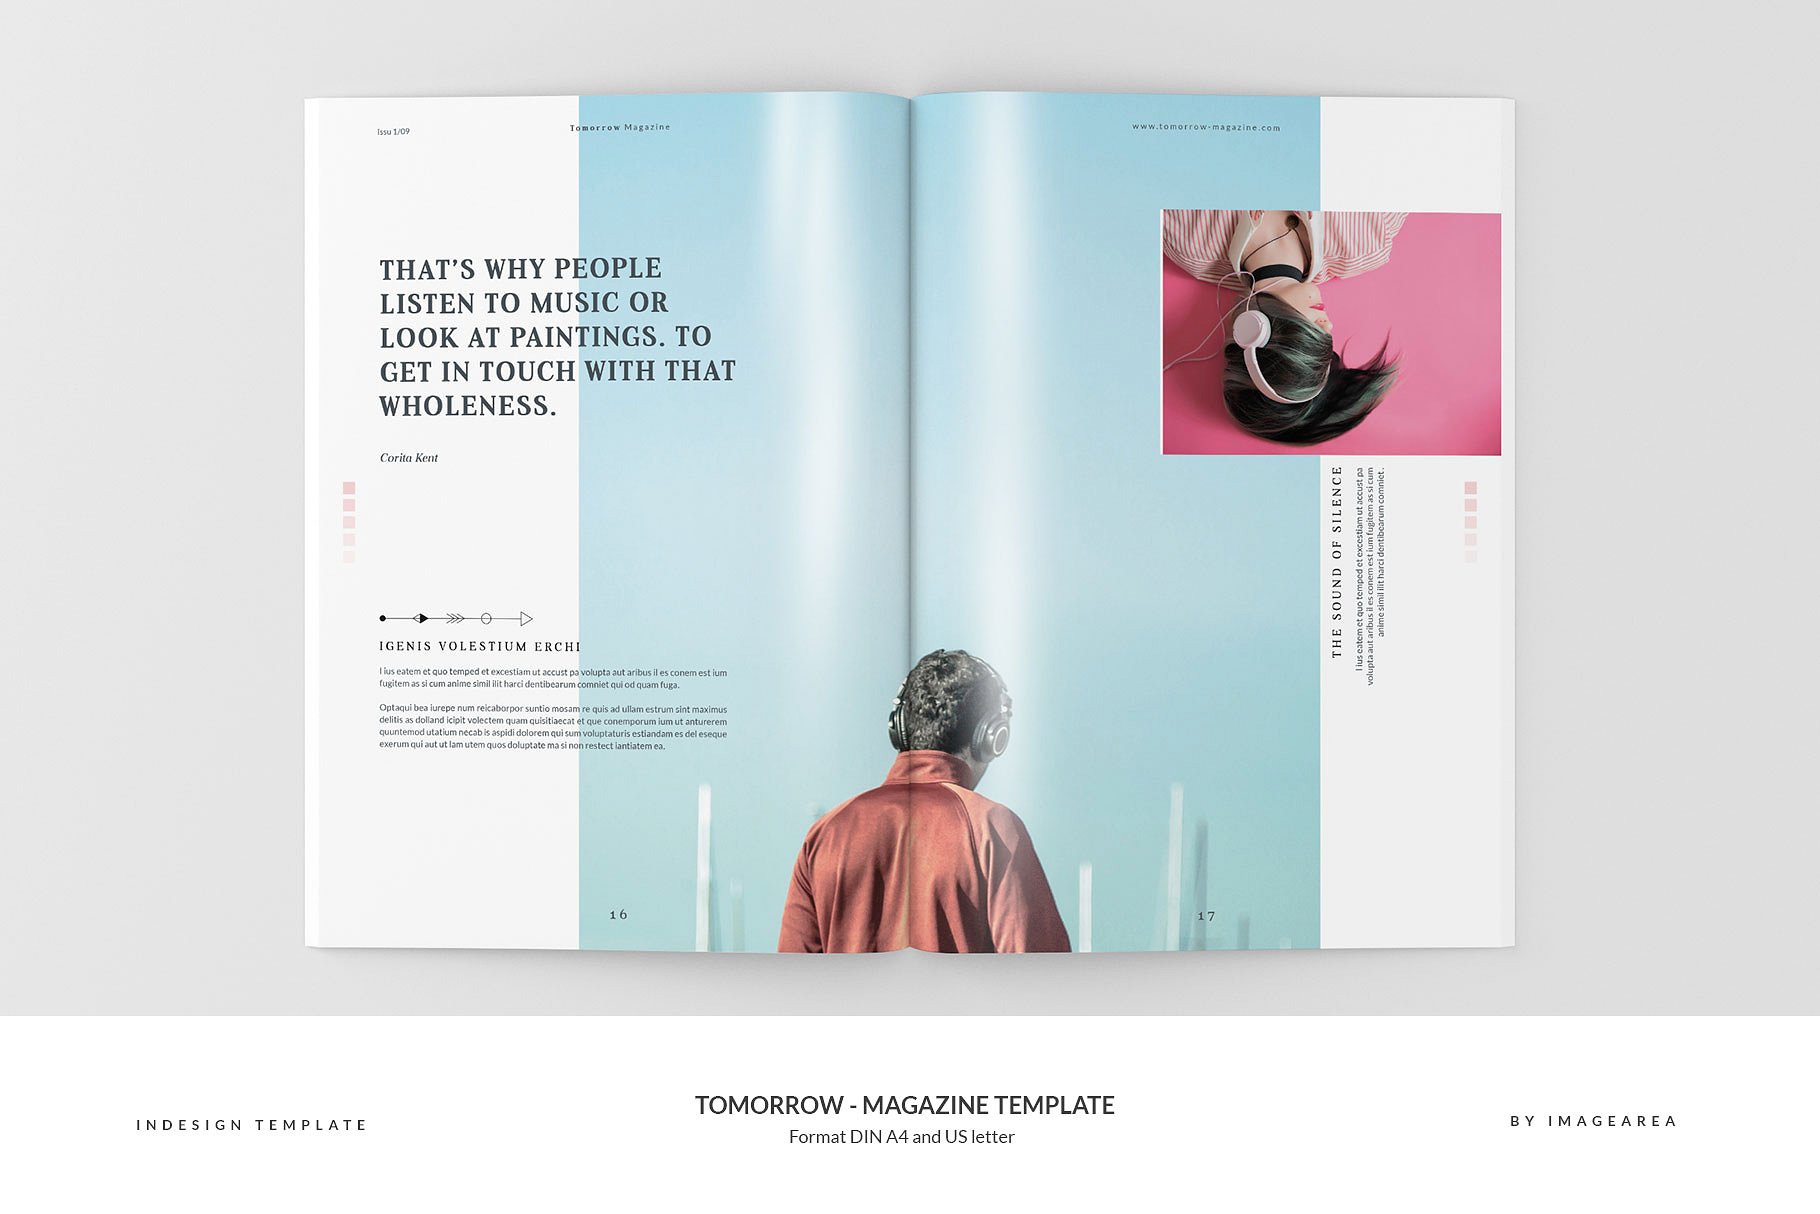 图文并茂排版优秀的专业杂志模板 Tomorrow – Magazine Template插图(9)